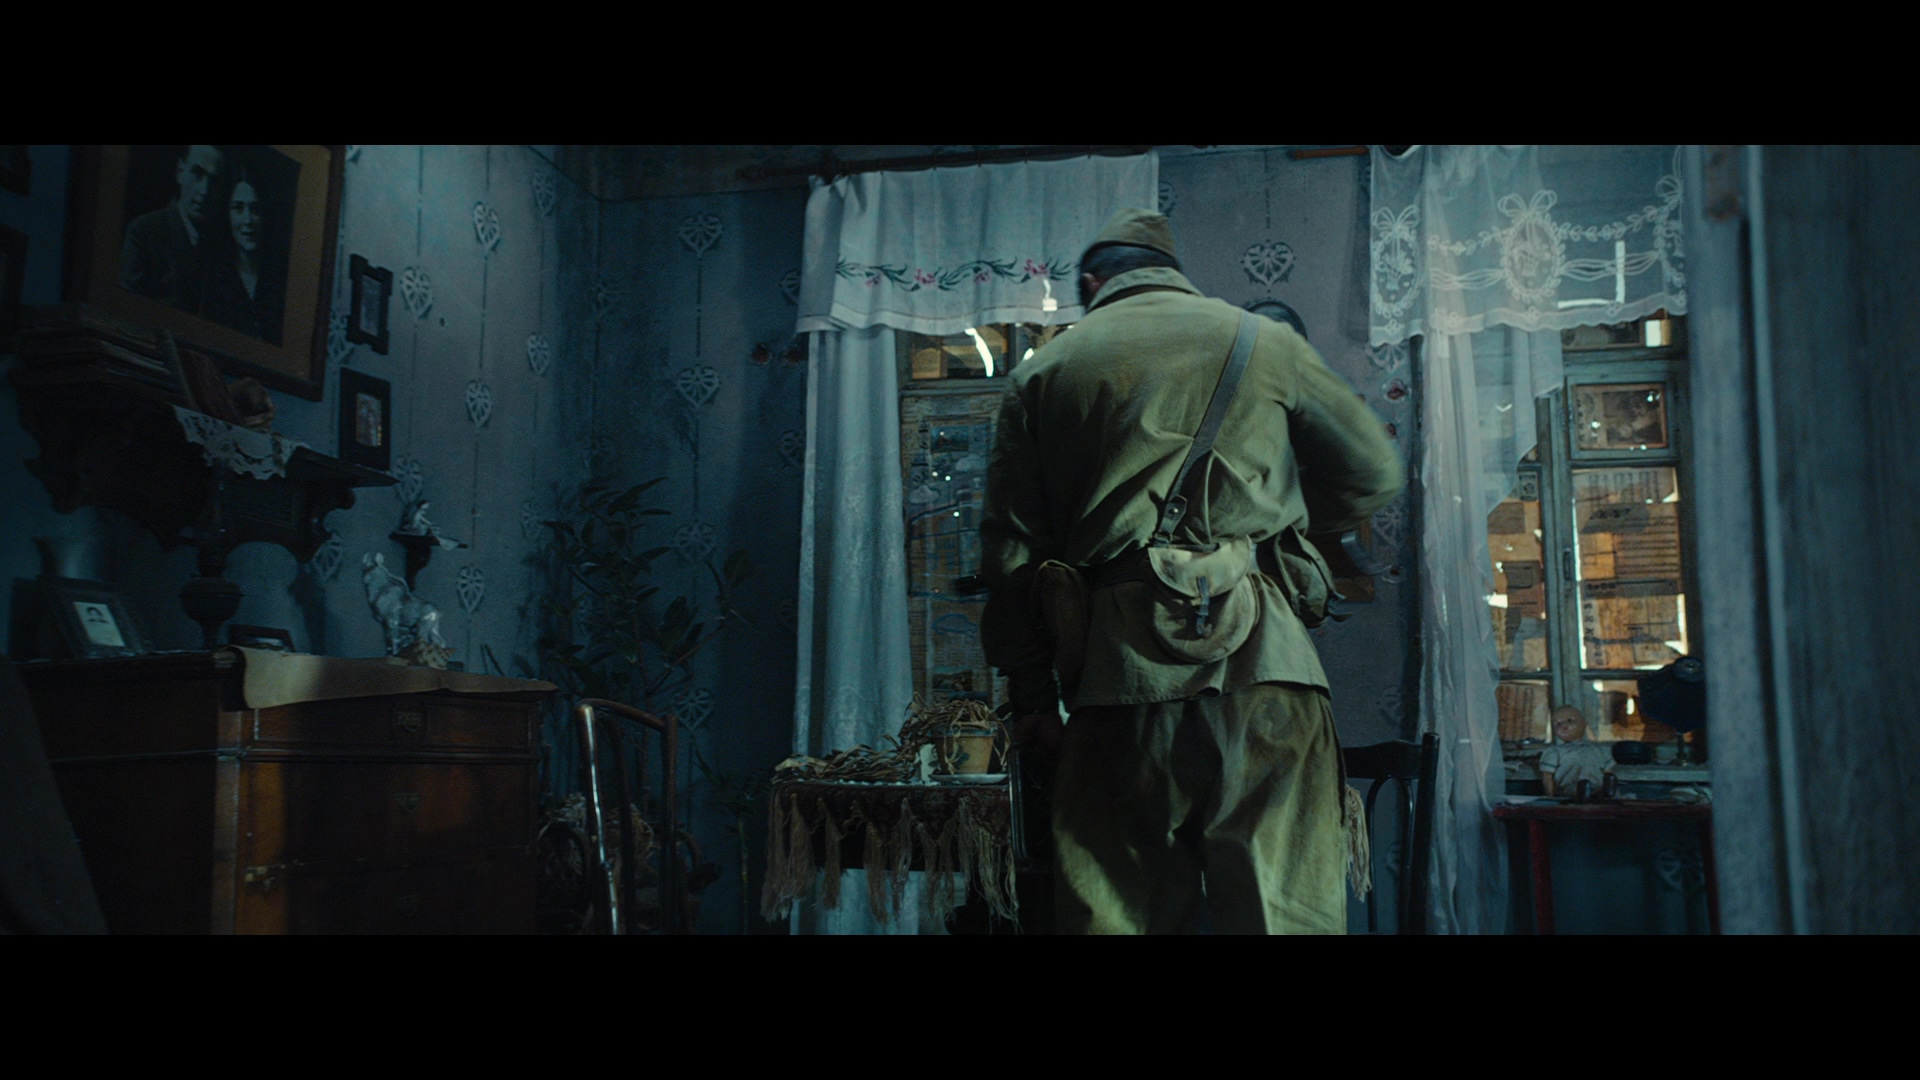 [斯大林格勒保卫战].Stalingrad.2013.TW.3D.BluRay.1080p.AVC.DTS-HD.MA.5.1-TTG   39.93G-10.jpg